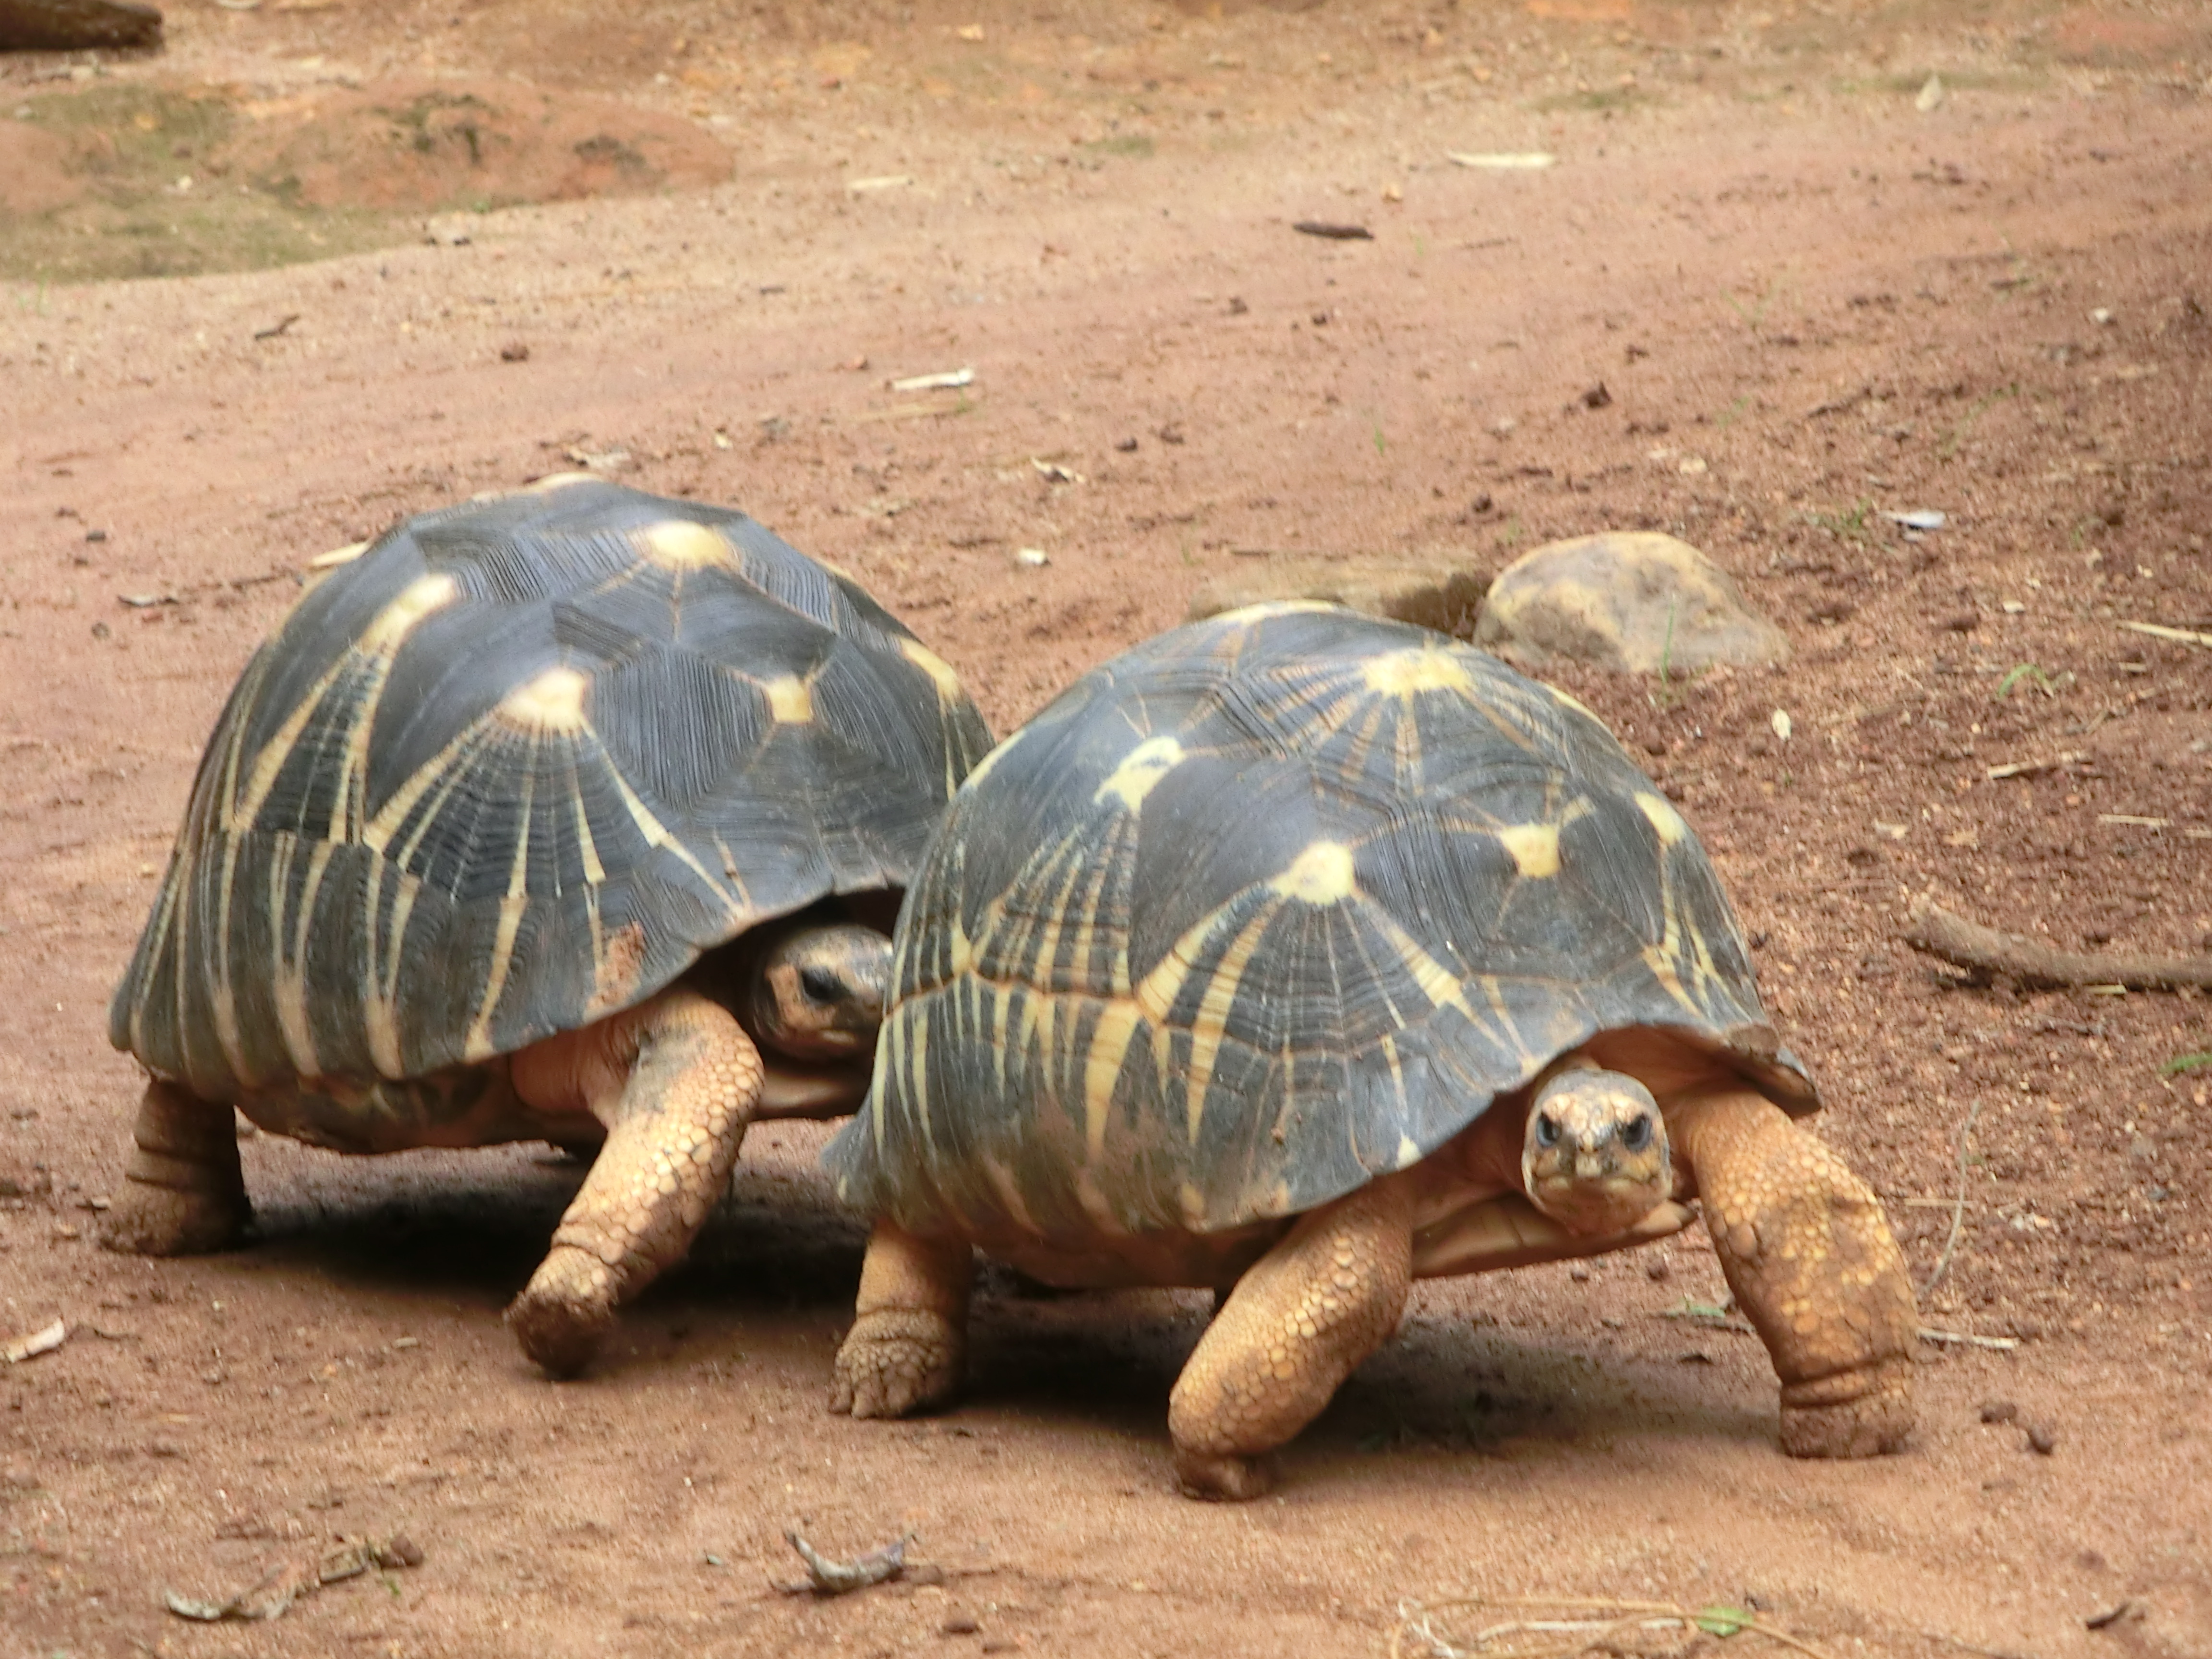 Saisie de tortues: Rappel des règles de détention de tortues d’espèces protégées